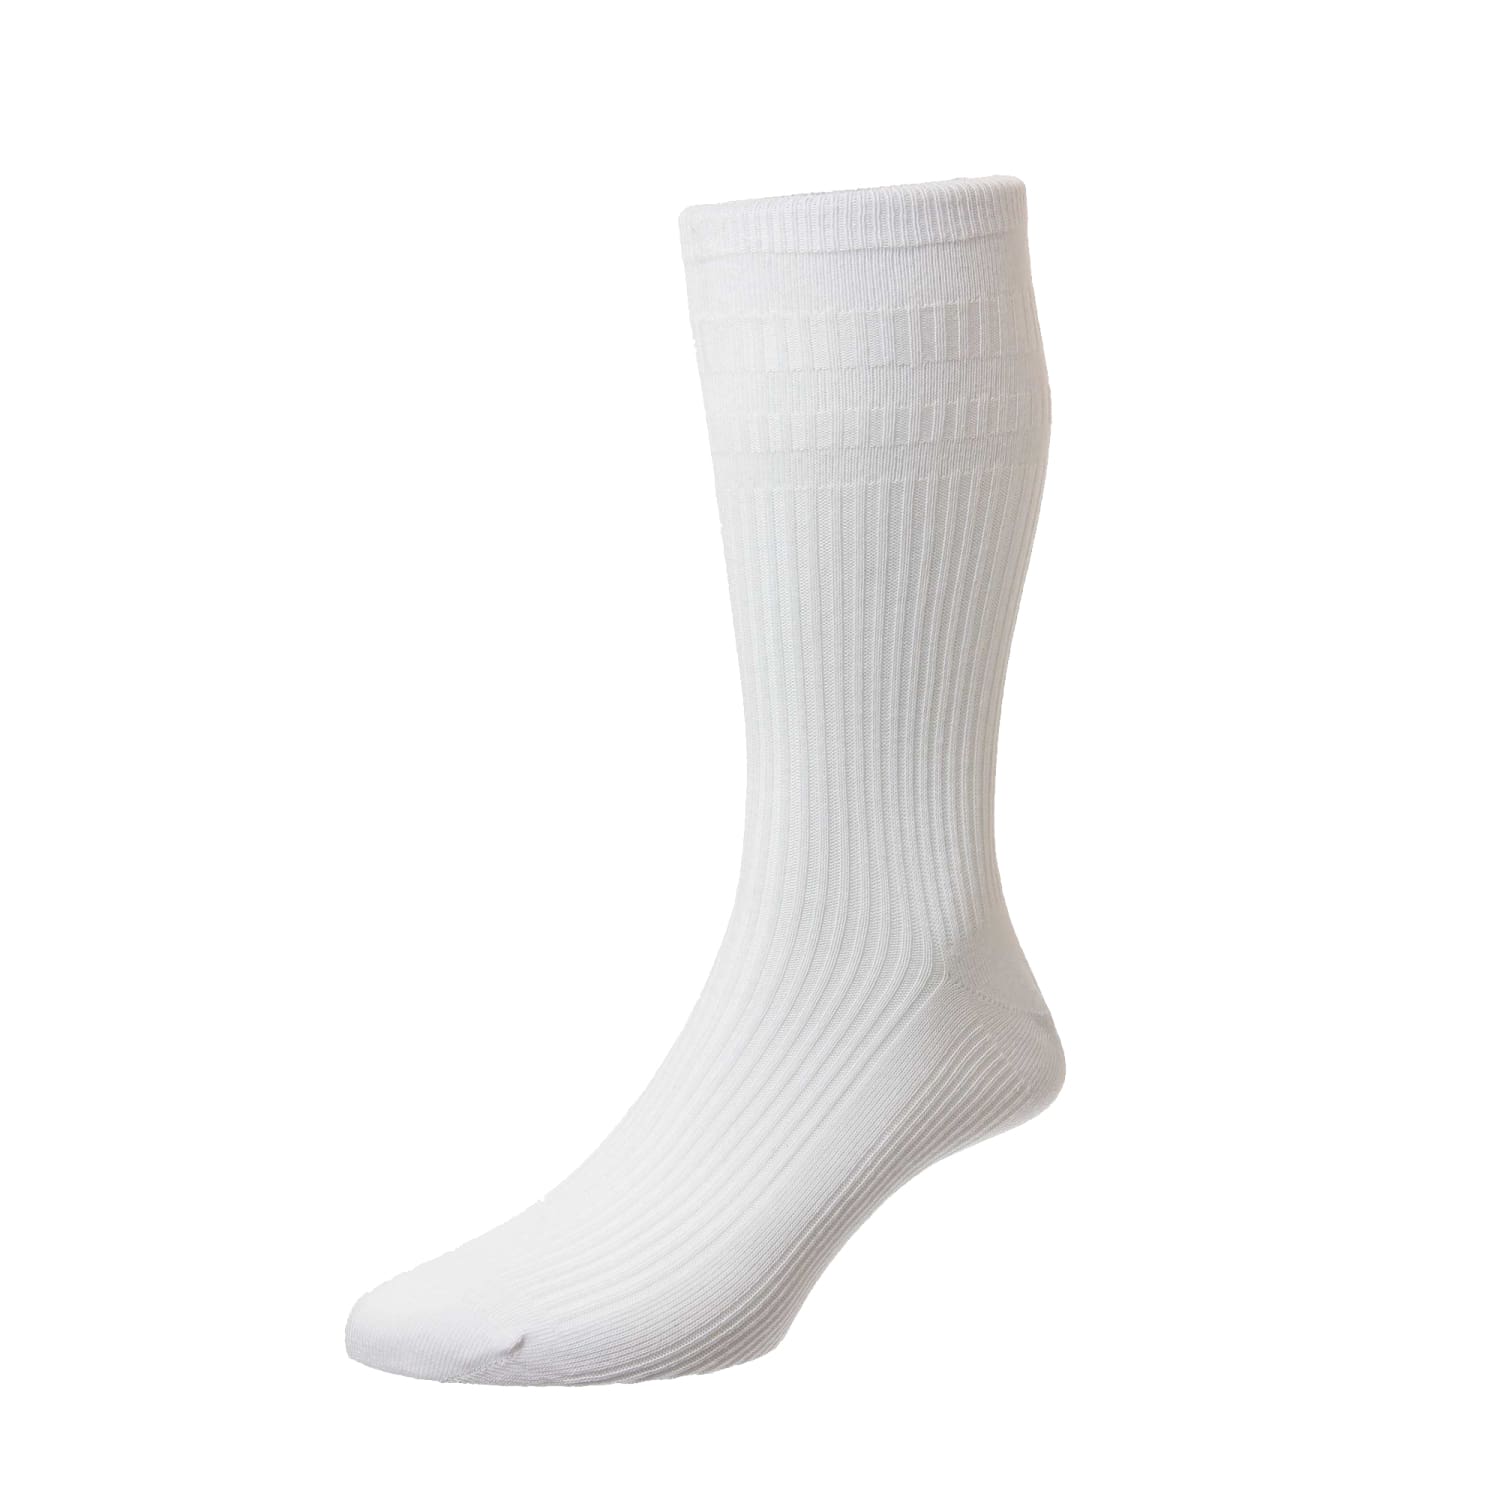 HJ Softop Socks - HJ91 - Cotton - White 1